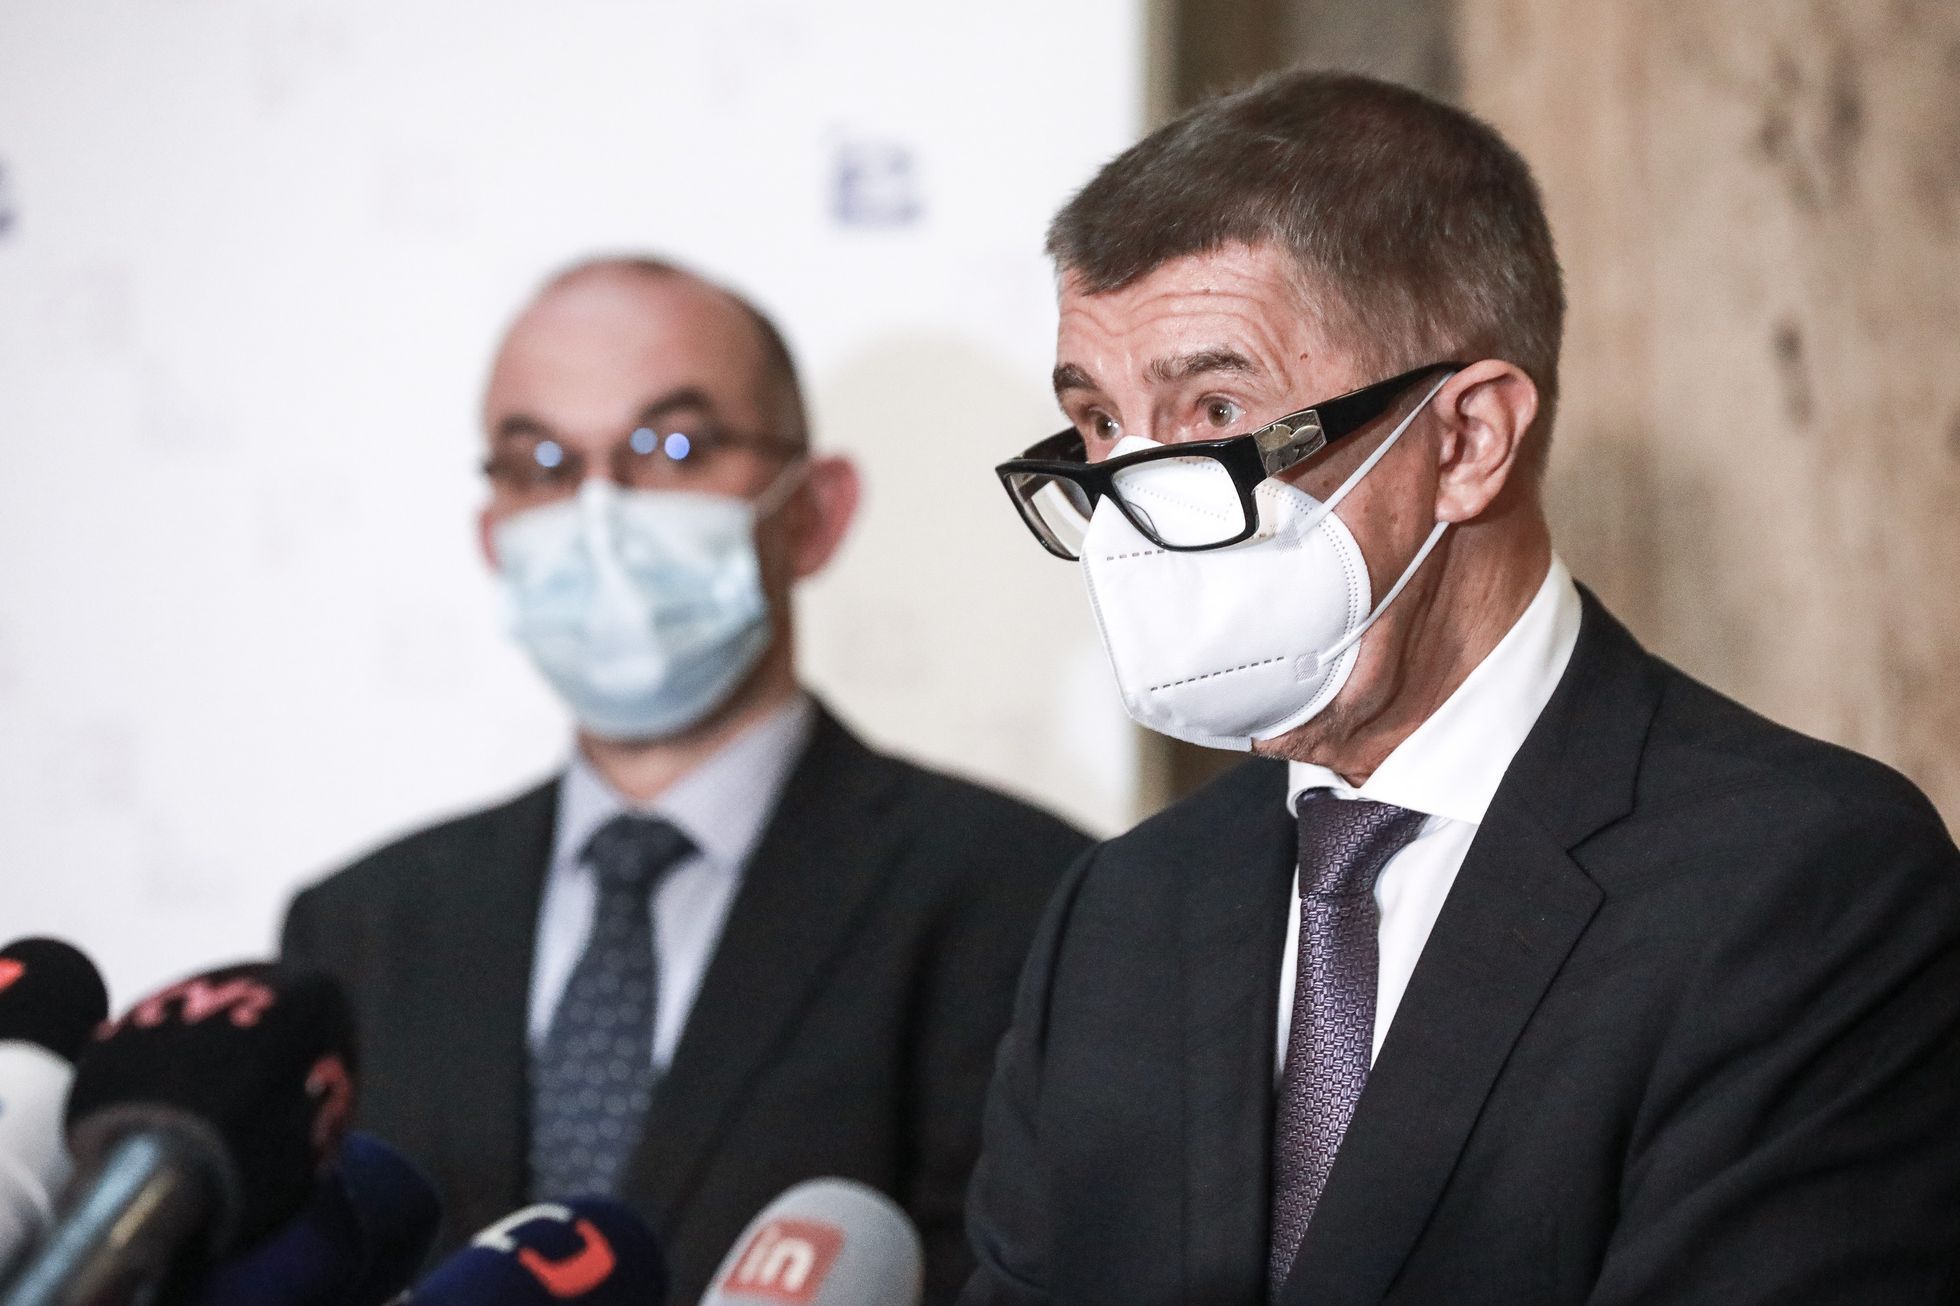 Ministr zdravotnictví Jan Blatný, tisková konference, Andrej Babiš